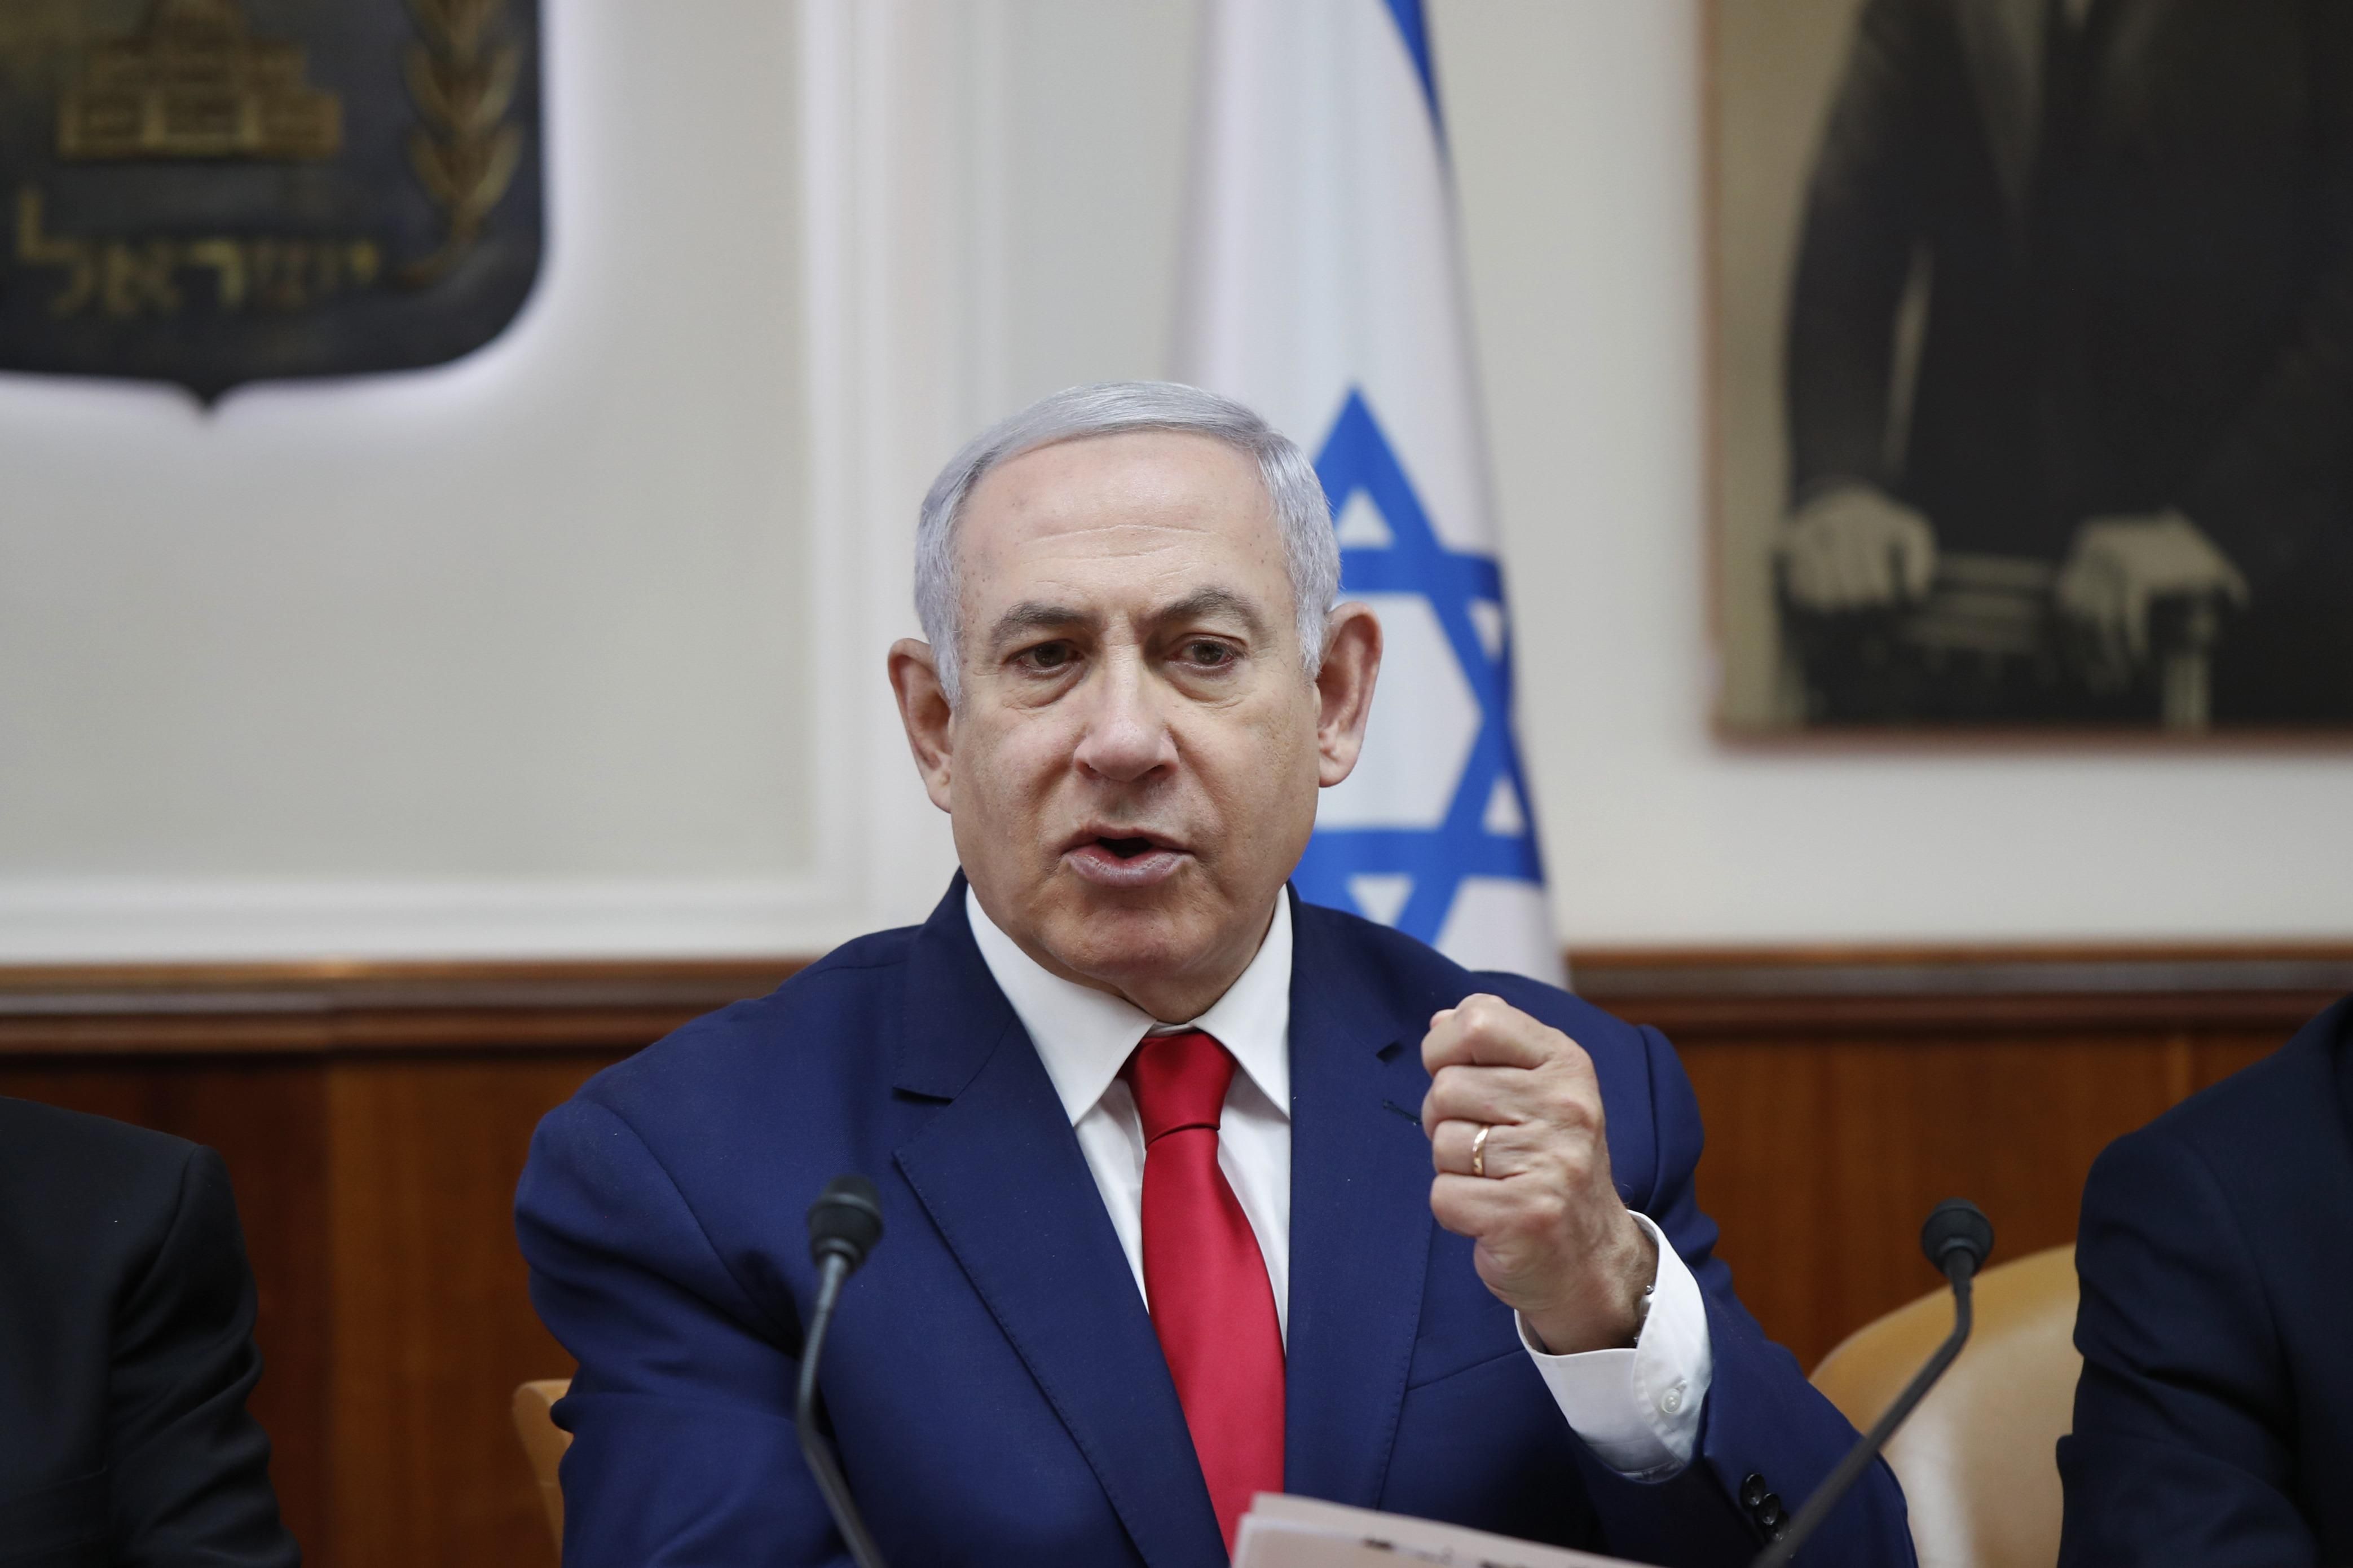 Впервые в истории: в Израиле судят действующего премьера, которого обвиняют в коррупции